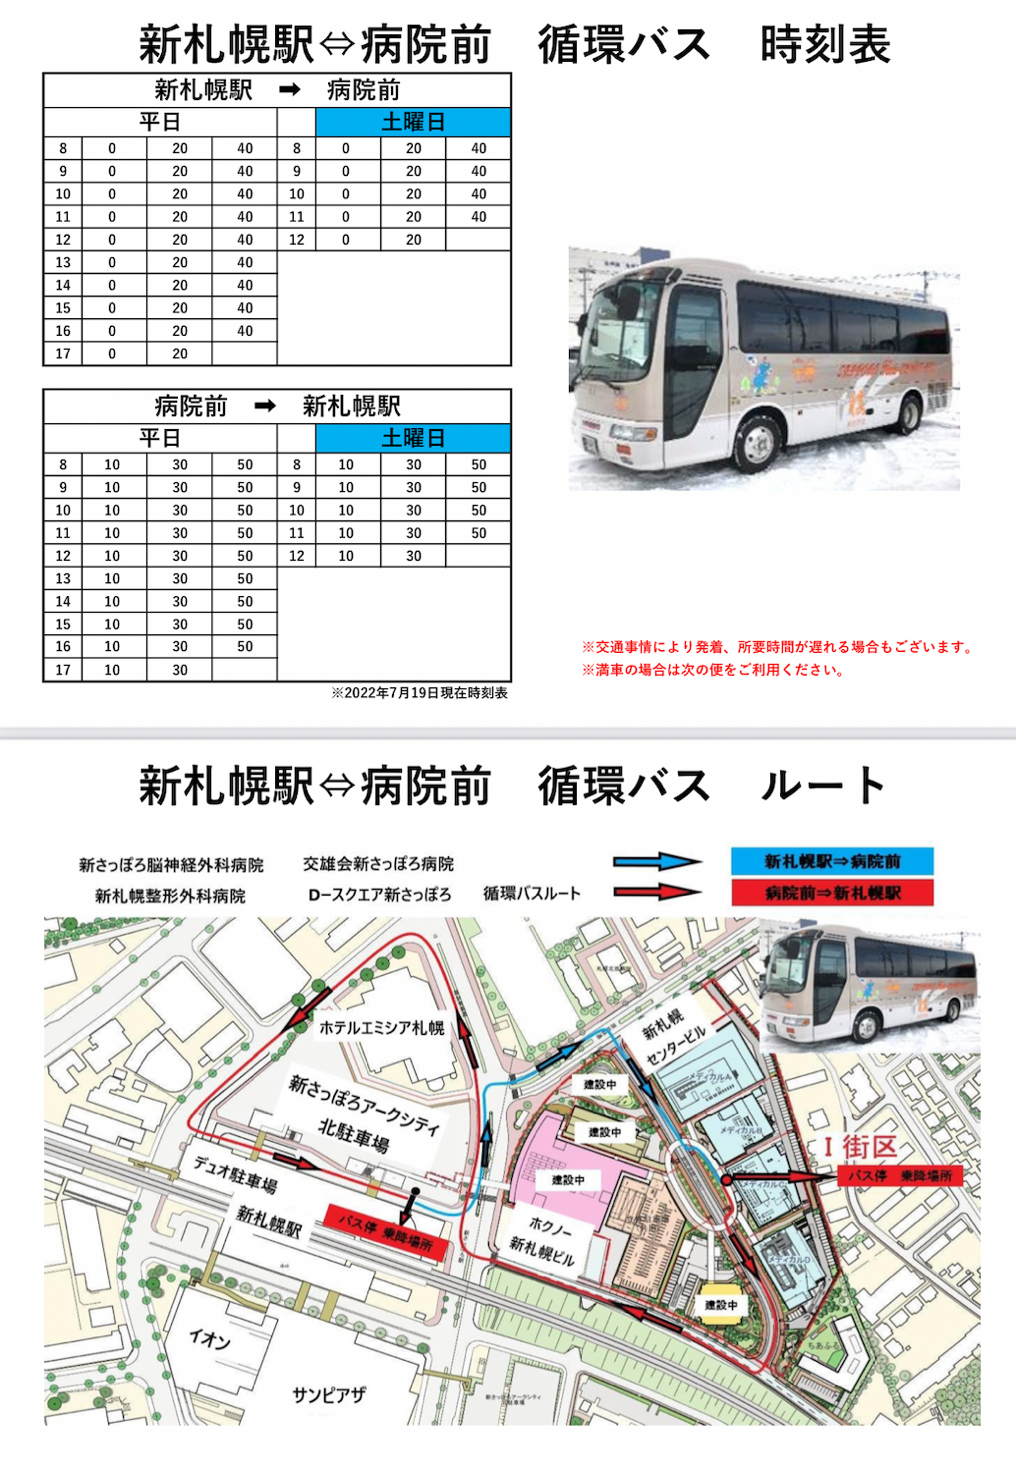 無料循環バス時刻表